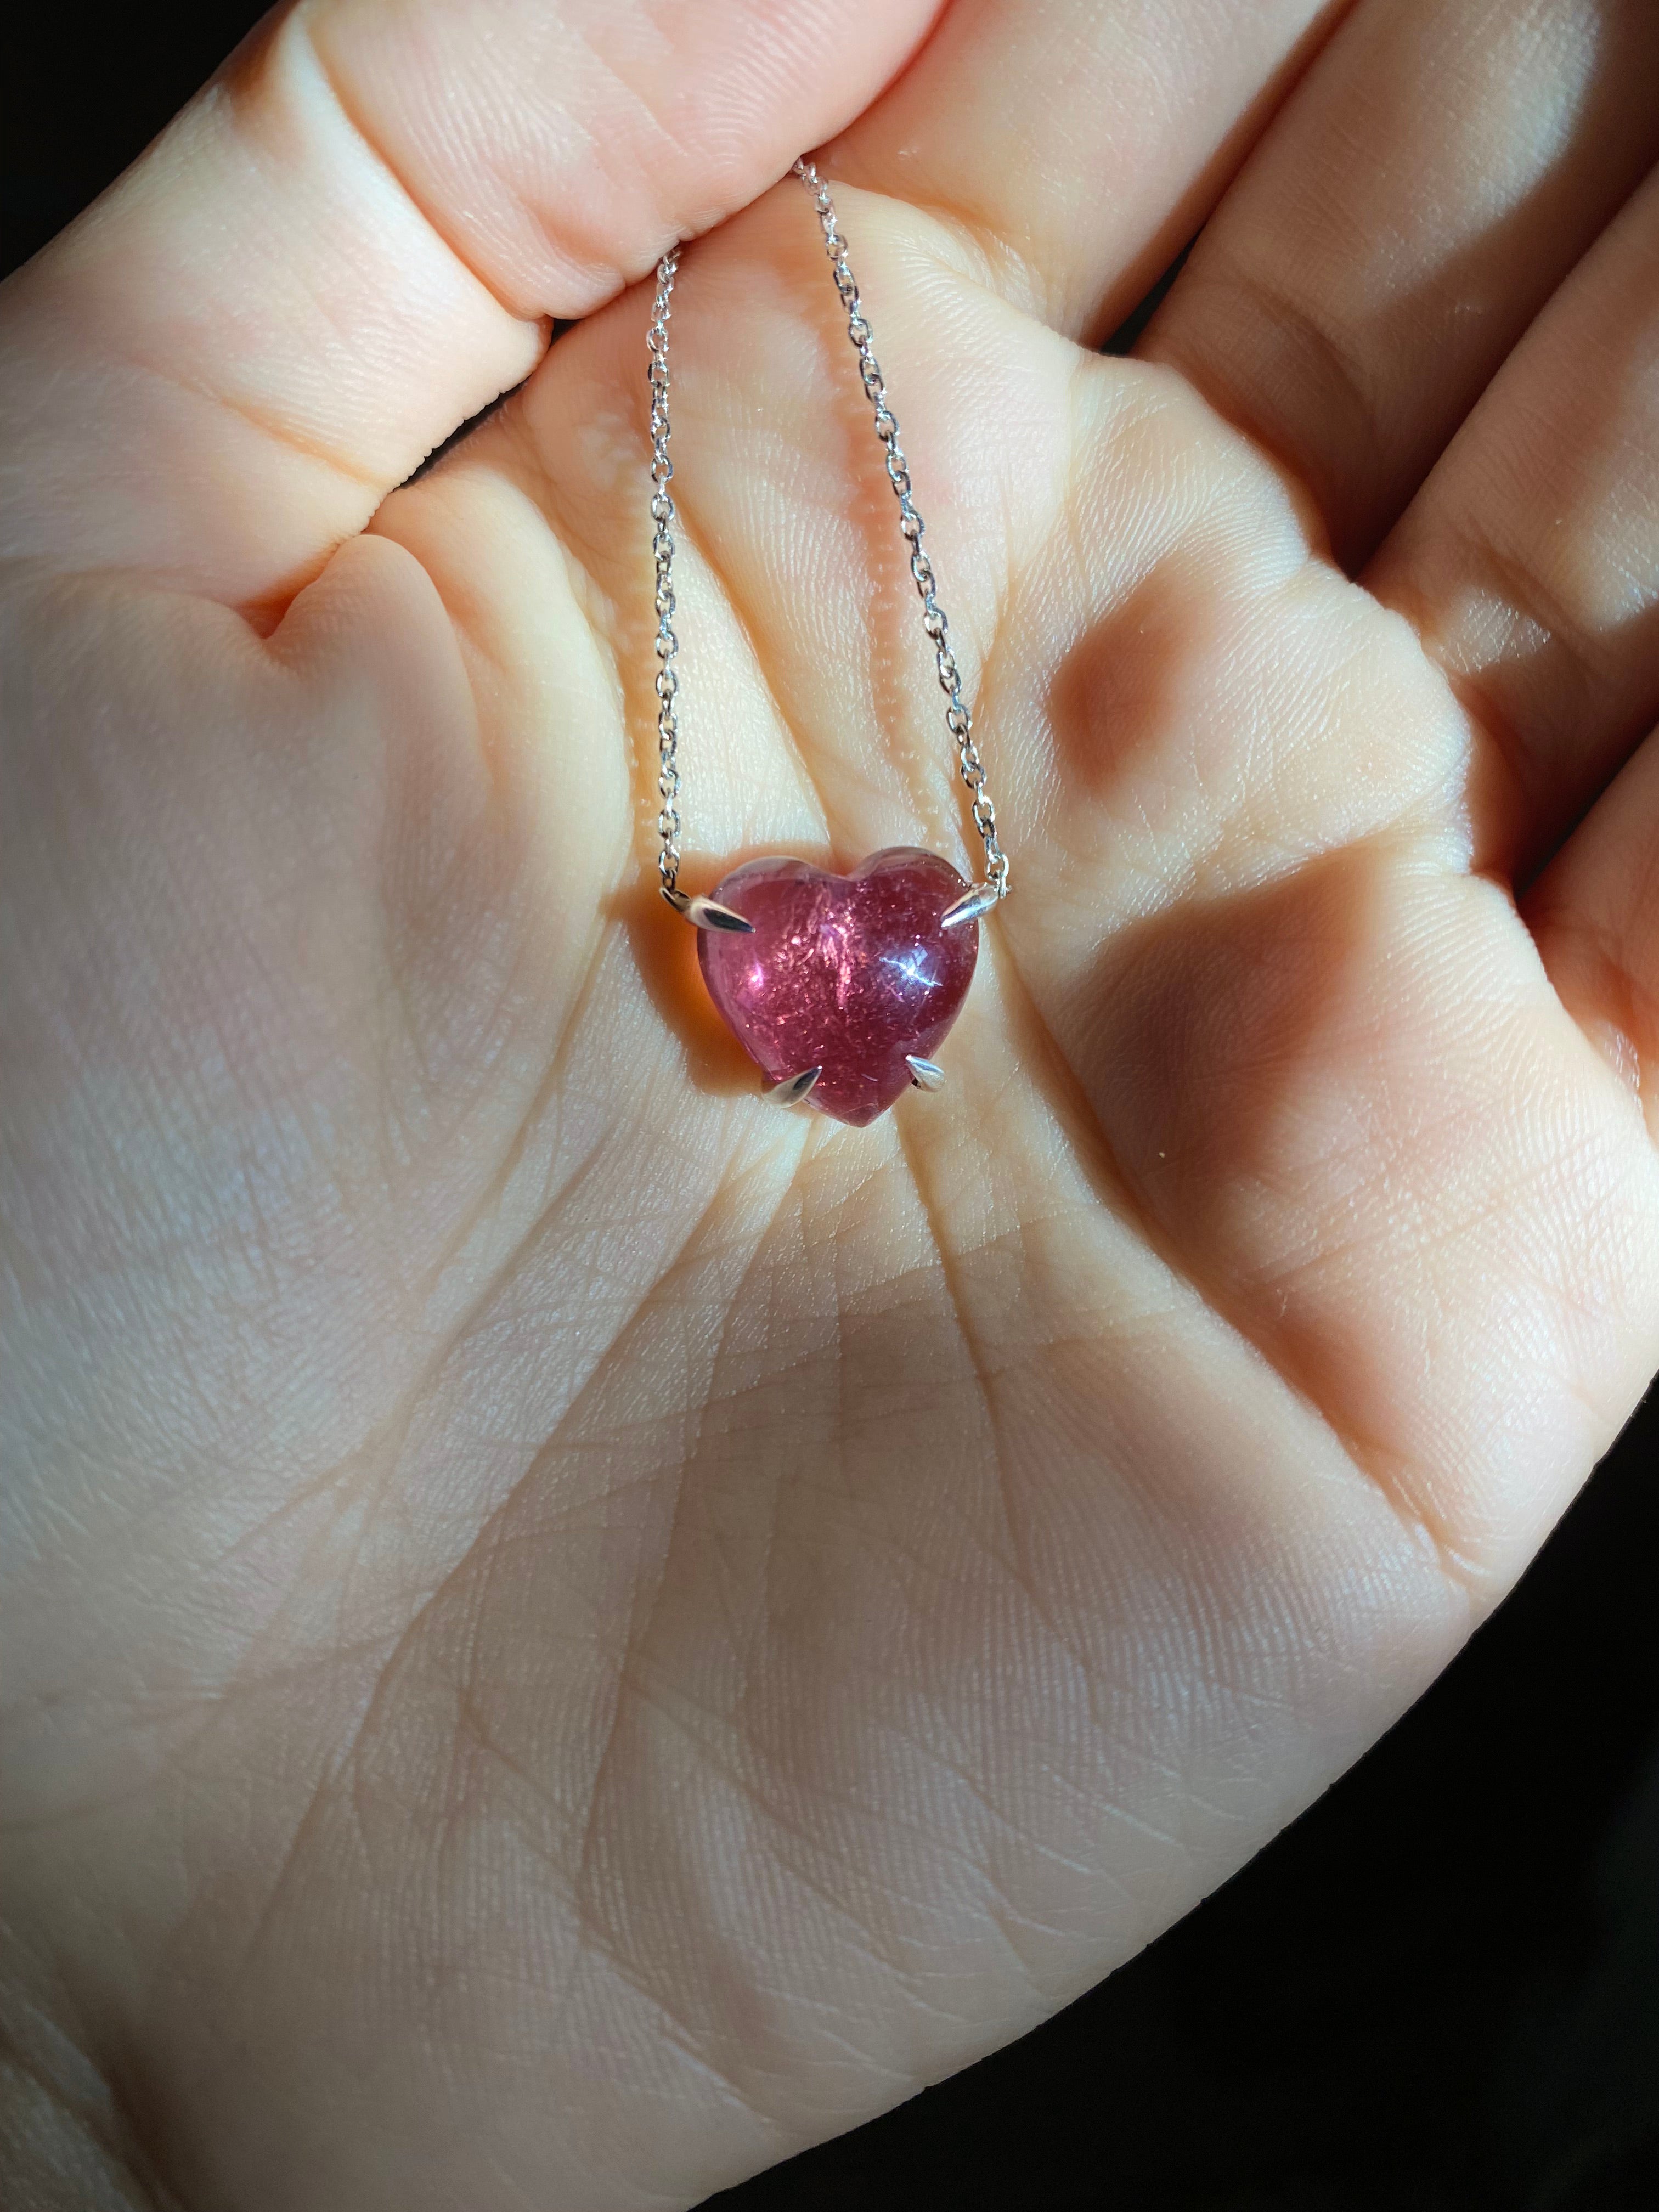 Solitaire Pink Tourmaline Quartz Heart Necklace